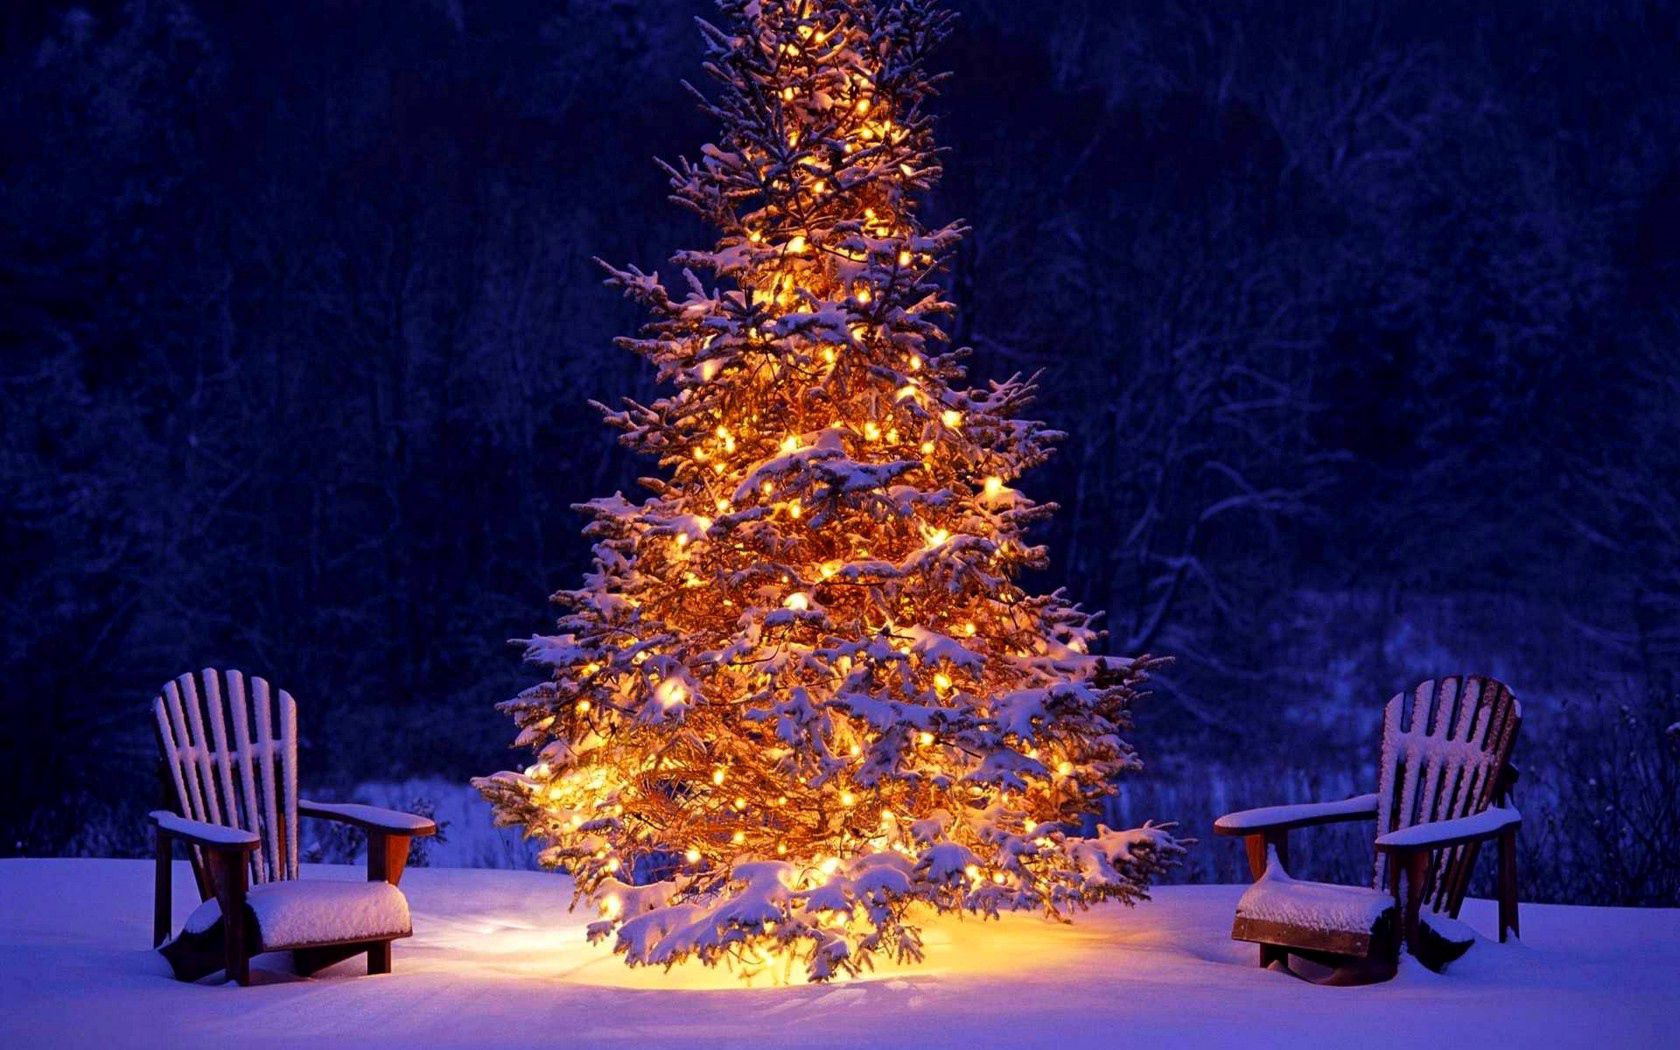 Фото украшенная елка светящаяся елка новогодние украшения - бесплатные картинки на Fonwall